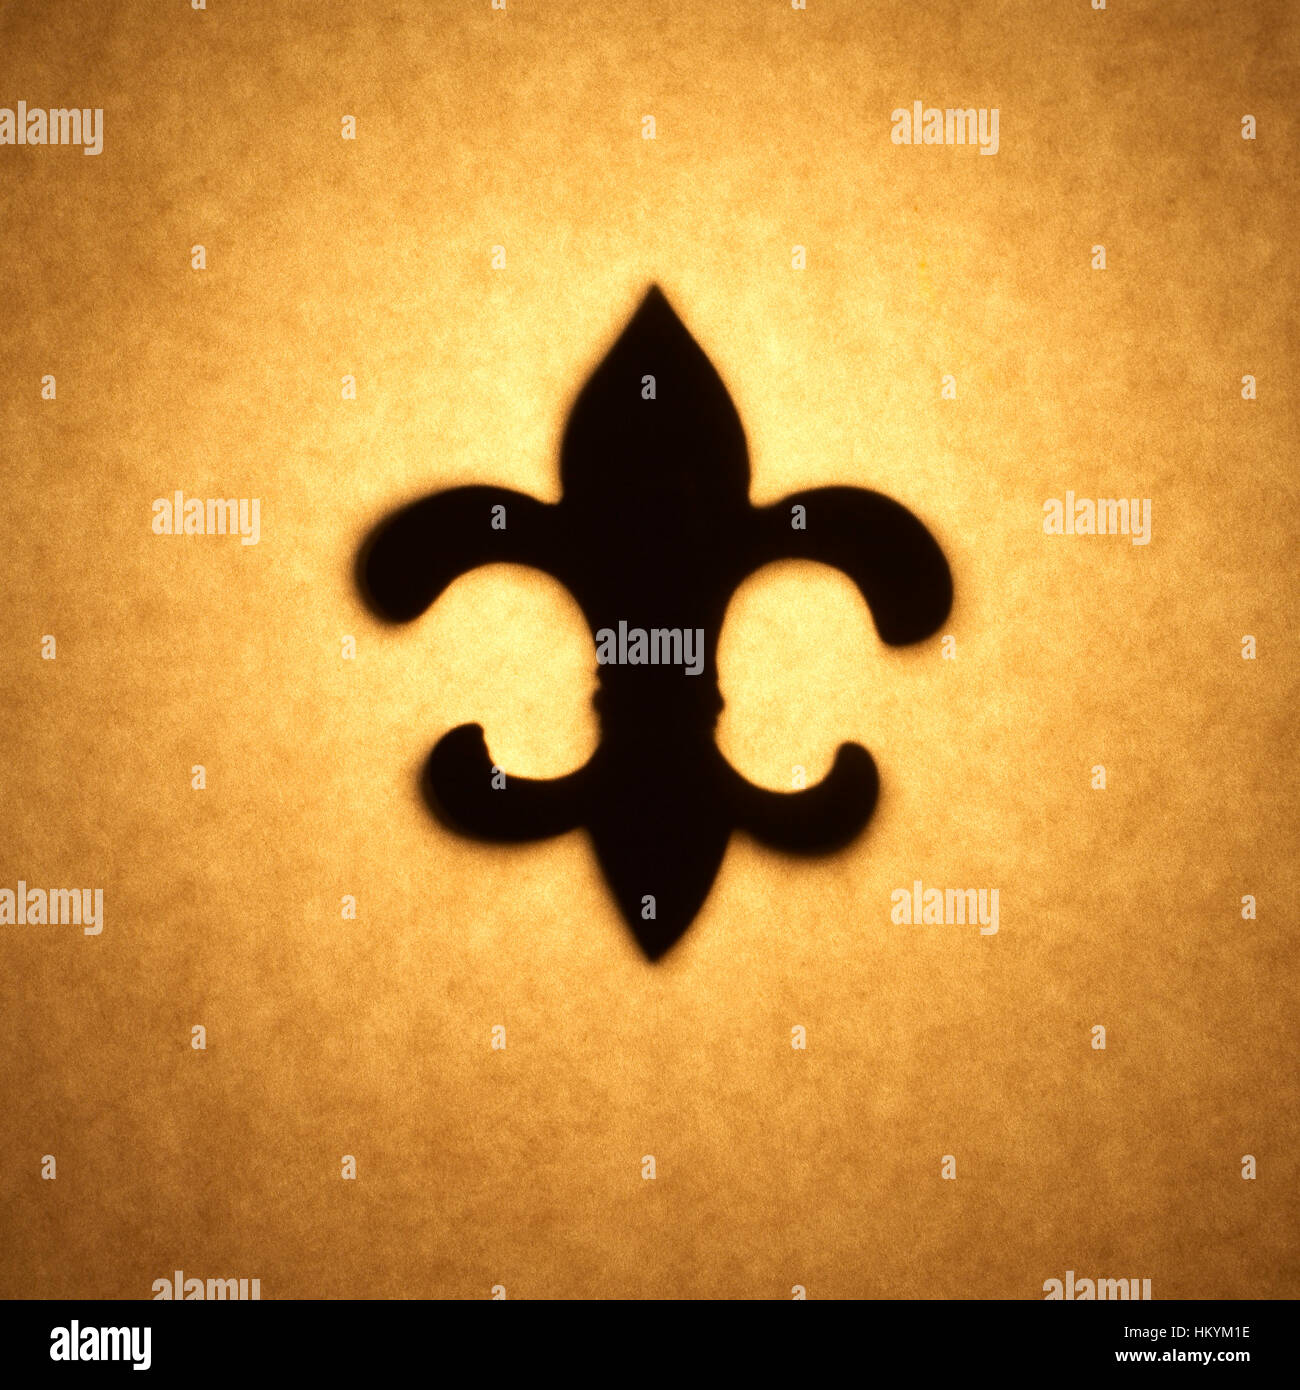 Silhouette en contre-jour de fleur-de-lis shape cut out contre ton brun, papier avec spot mettez en surbrillance. Banque D'Images